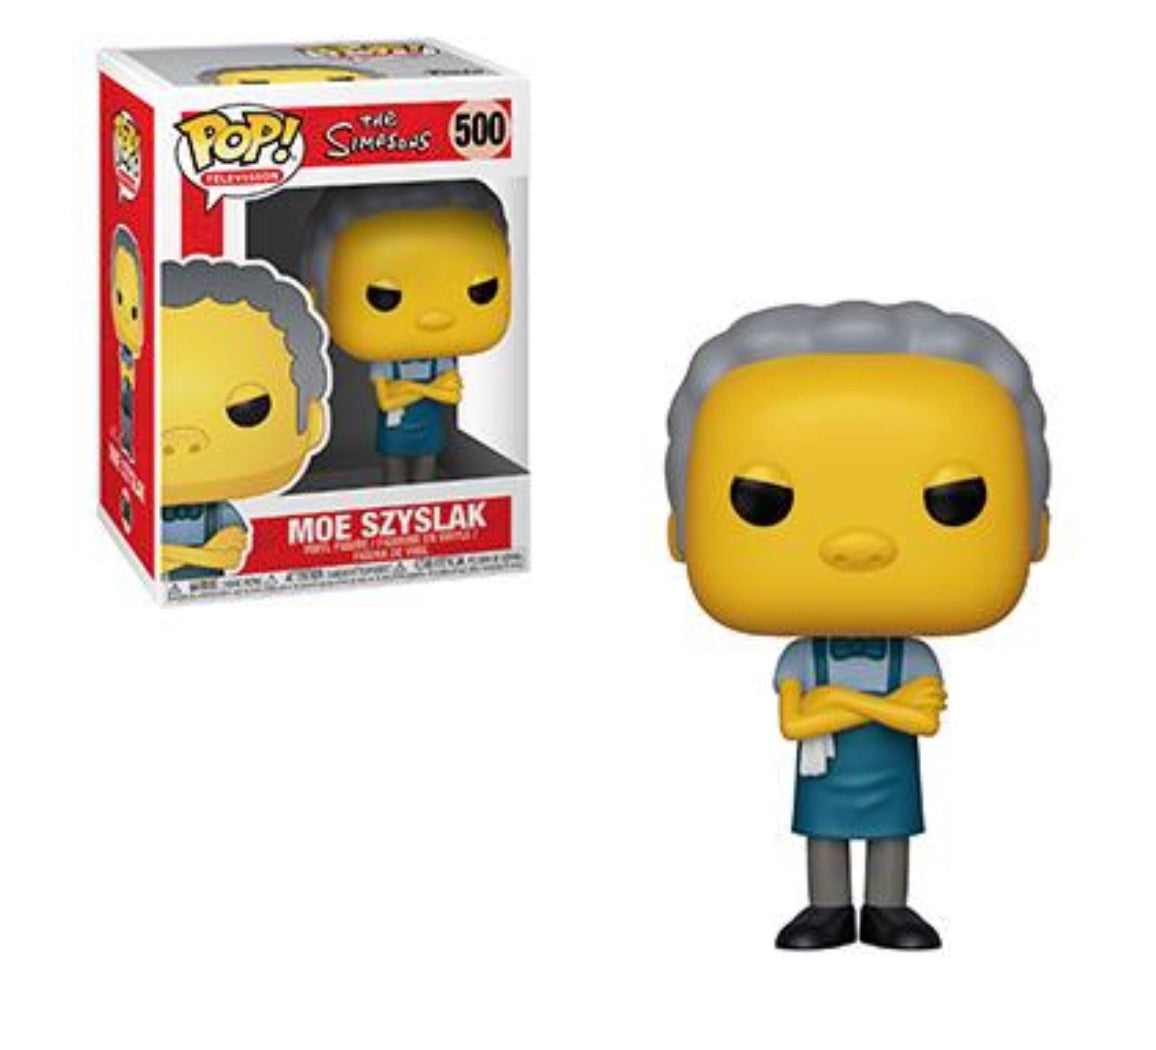 (Preorder) Pop! The Simpsons Moe Szyslak